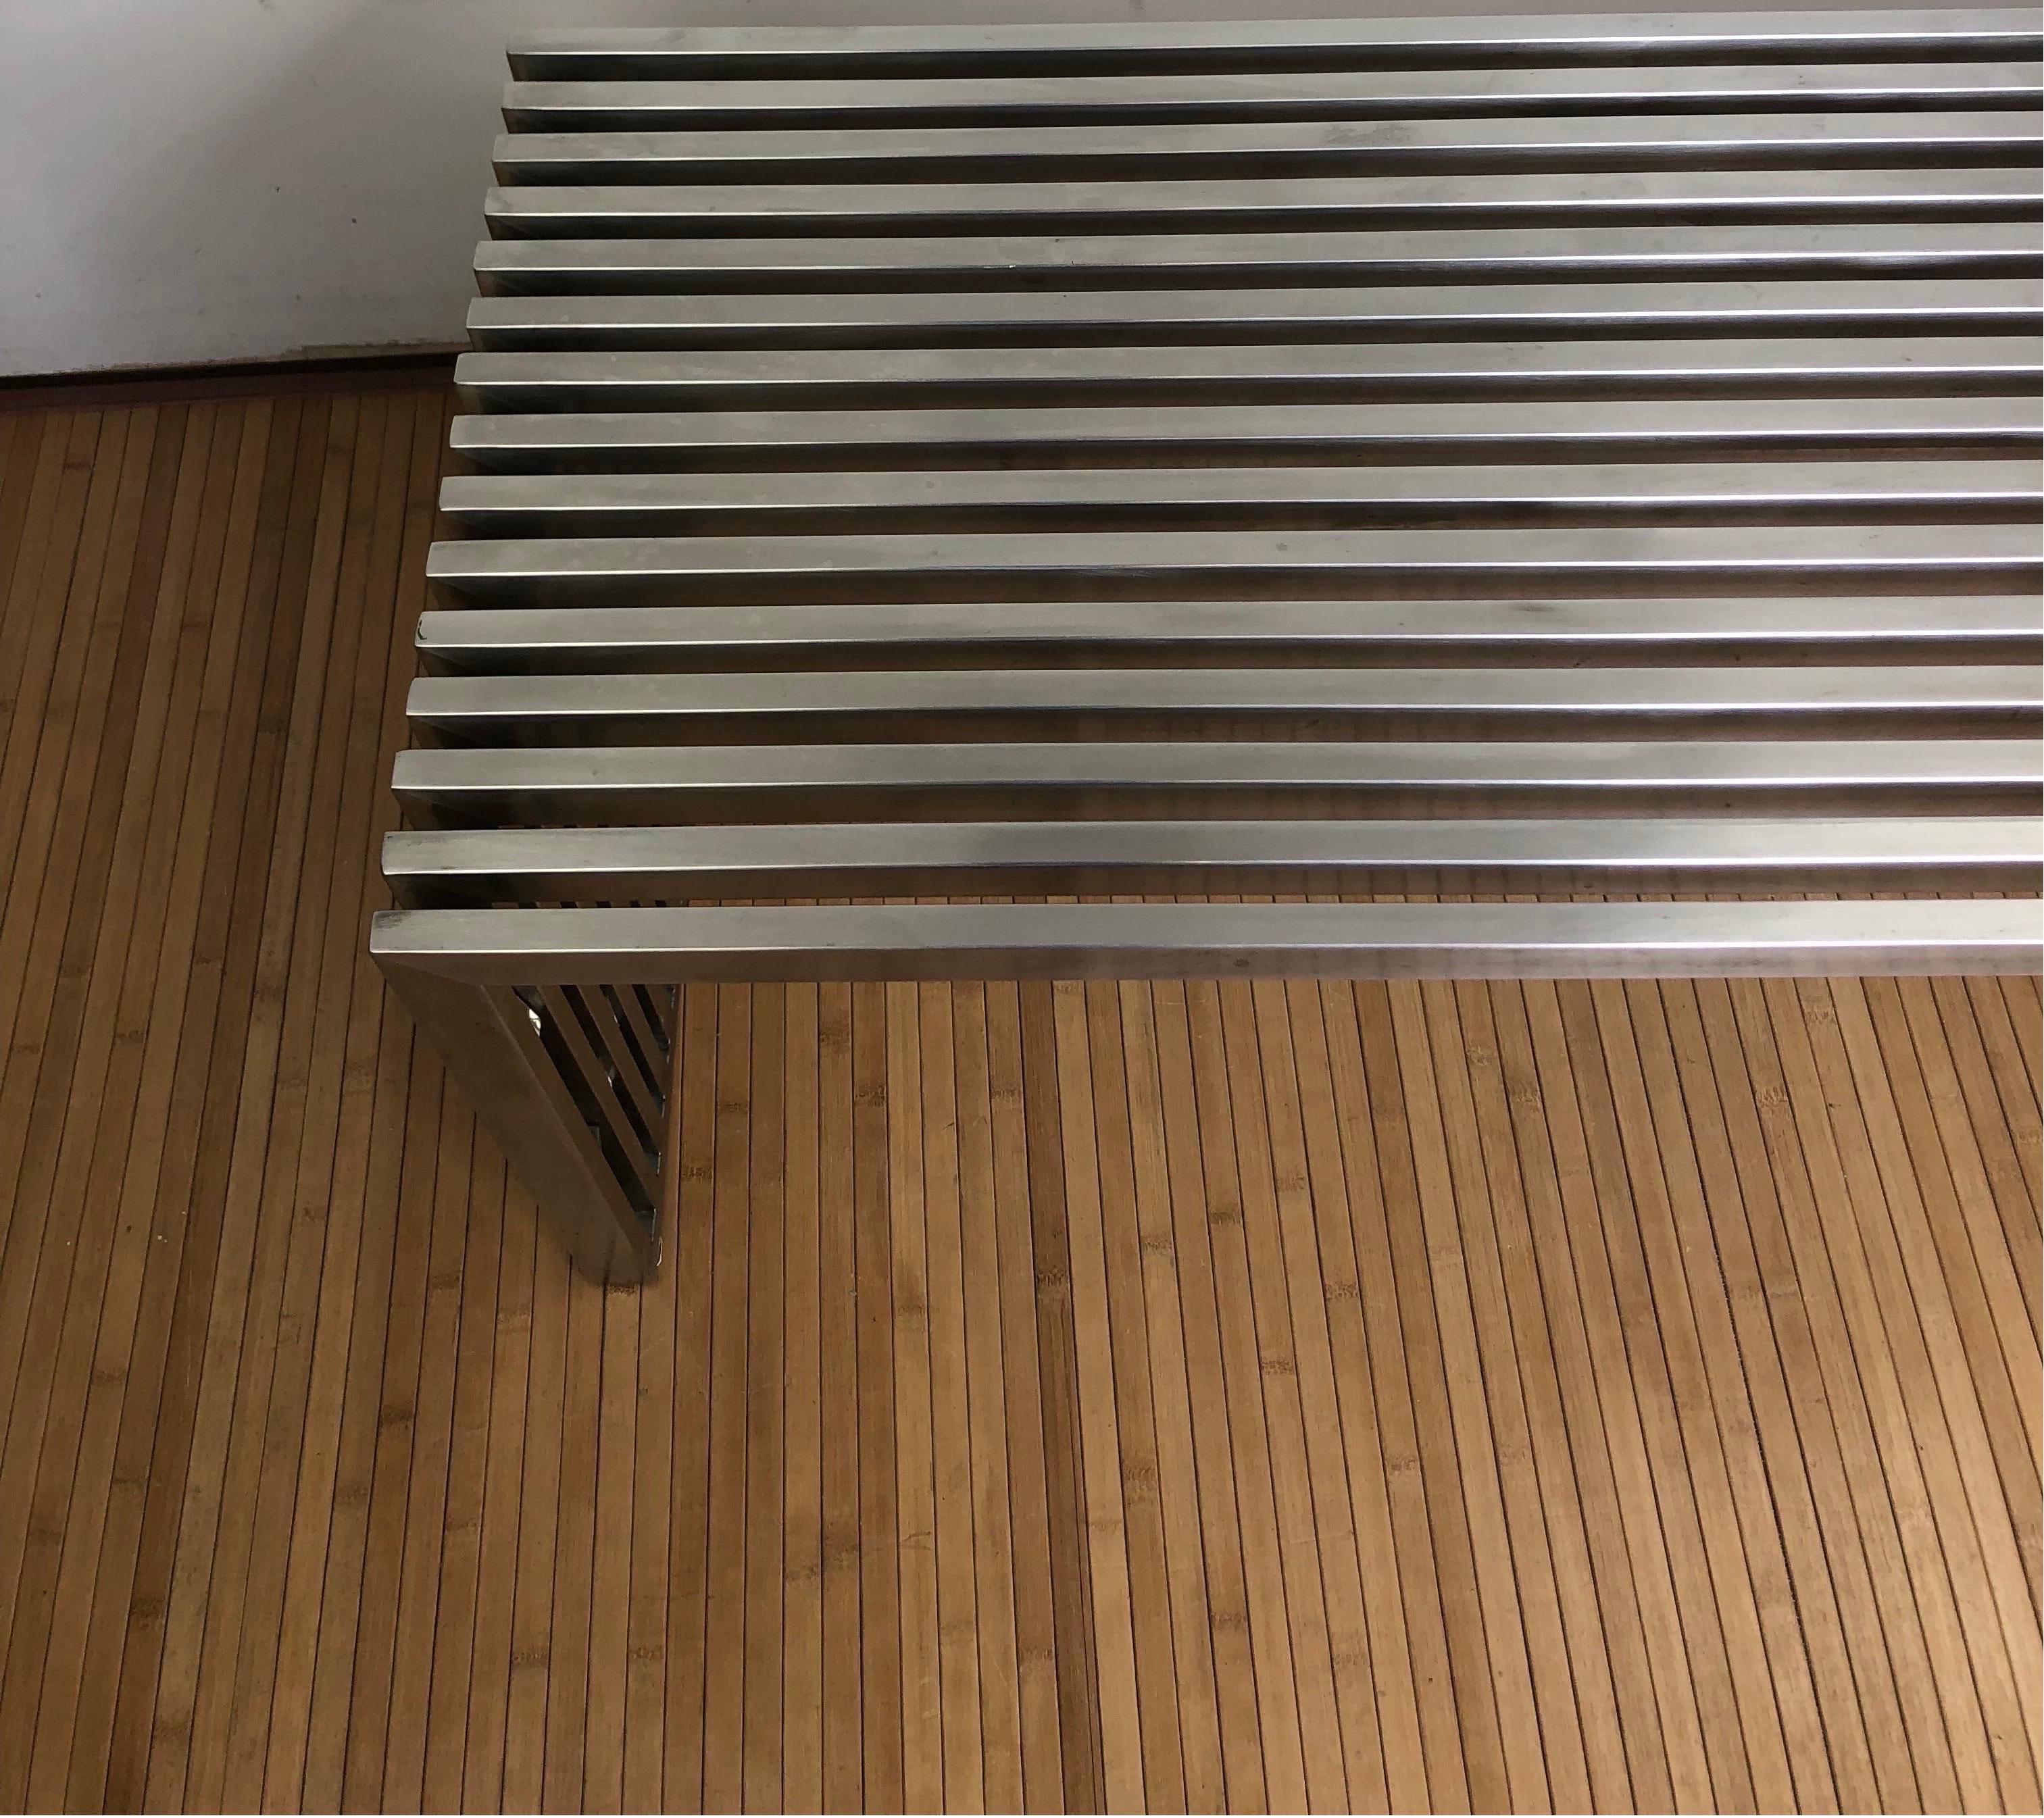 Modernistische Lattenbank aus Chrom im Stil von Milo Baughman. Verchromte quadratische Metalllamellen mit einzigartigen Abstandshaltern aus Lucit.